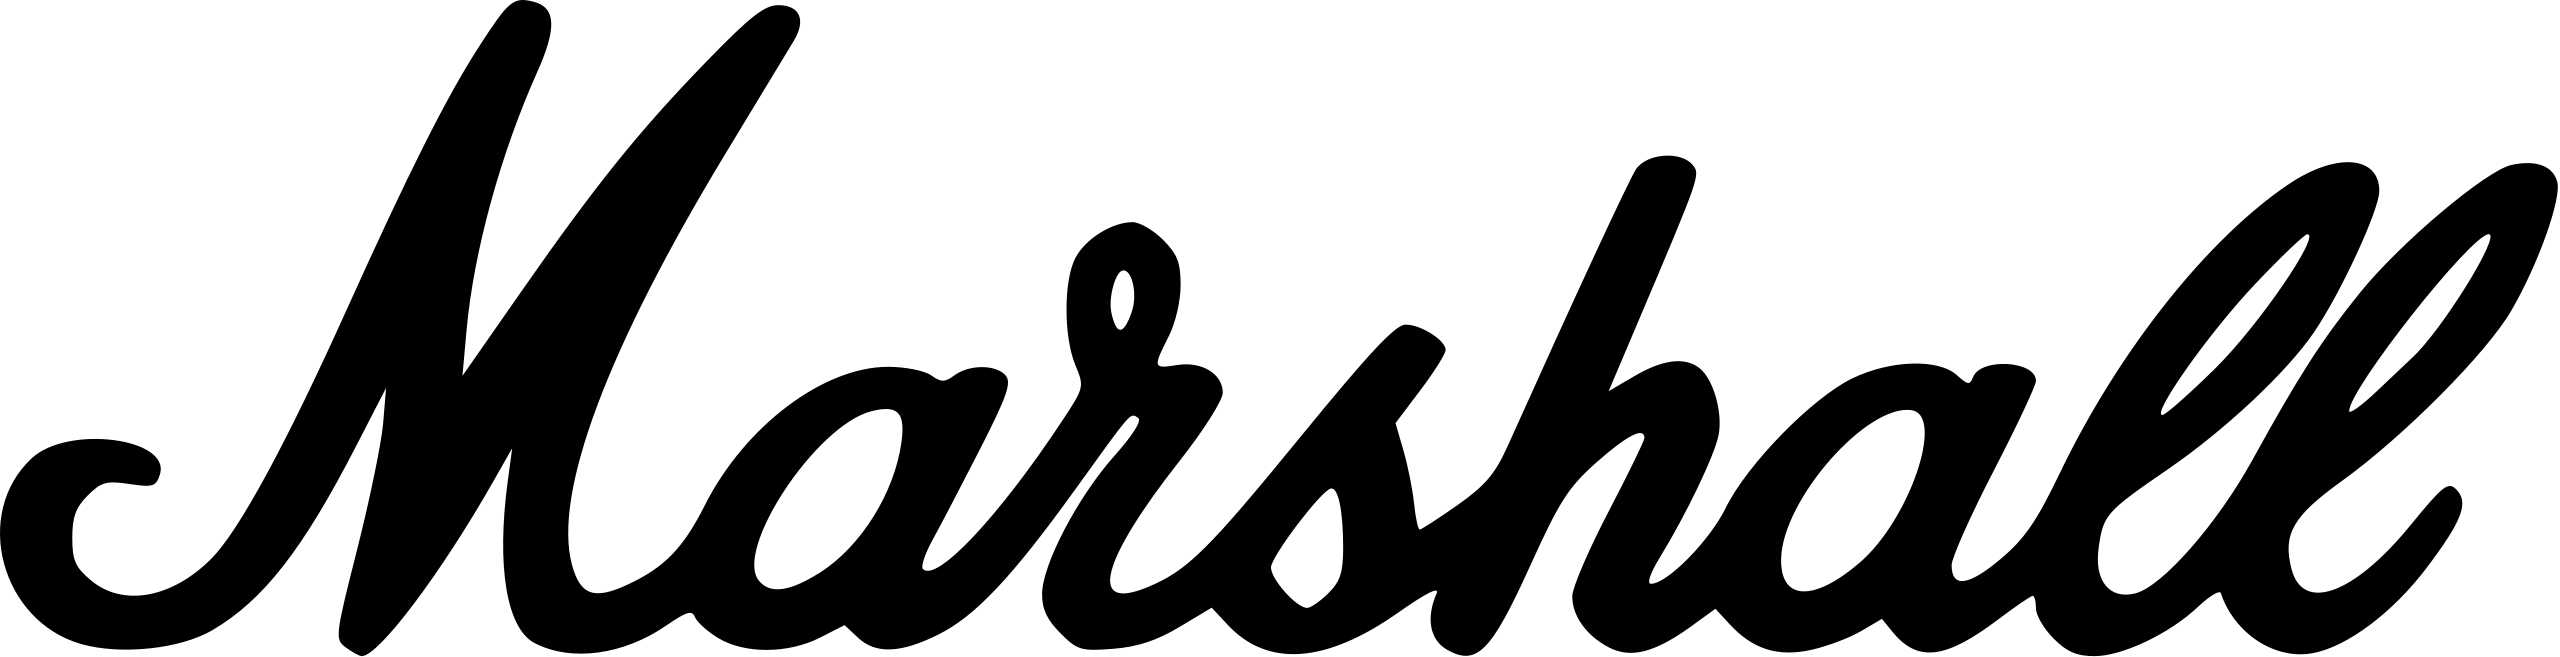 Marshal Logo PNG File